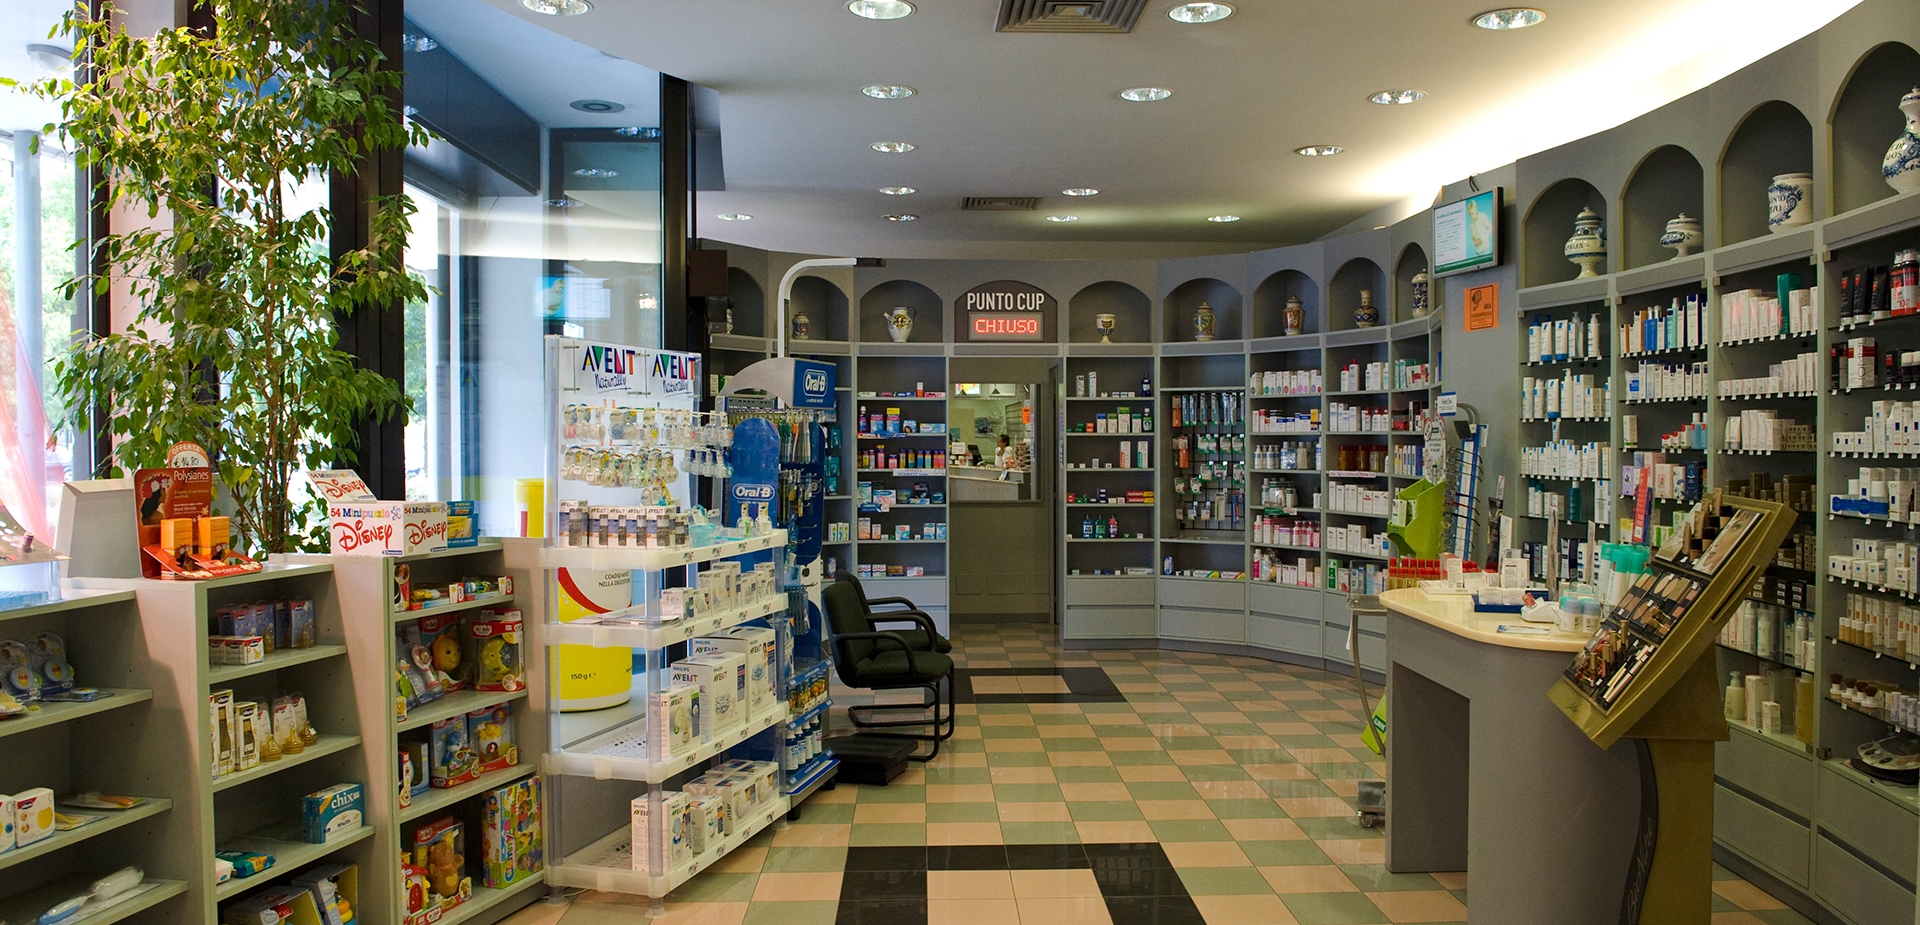 Interno farmacia